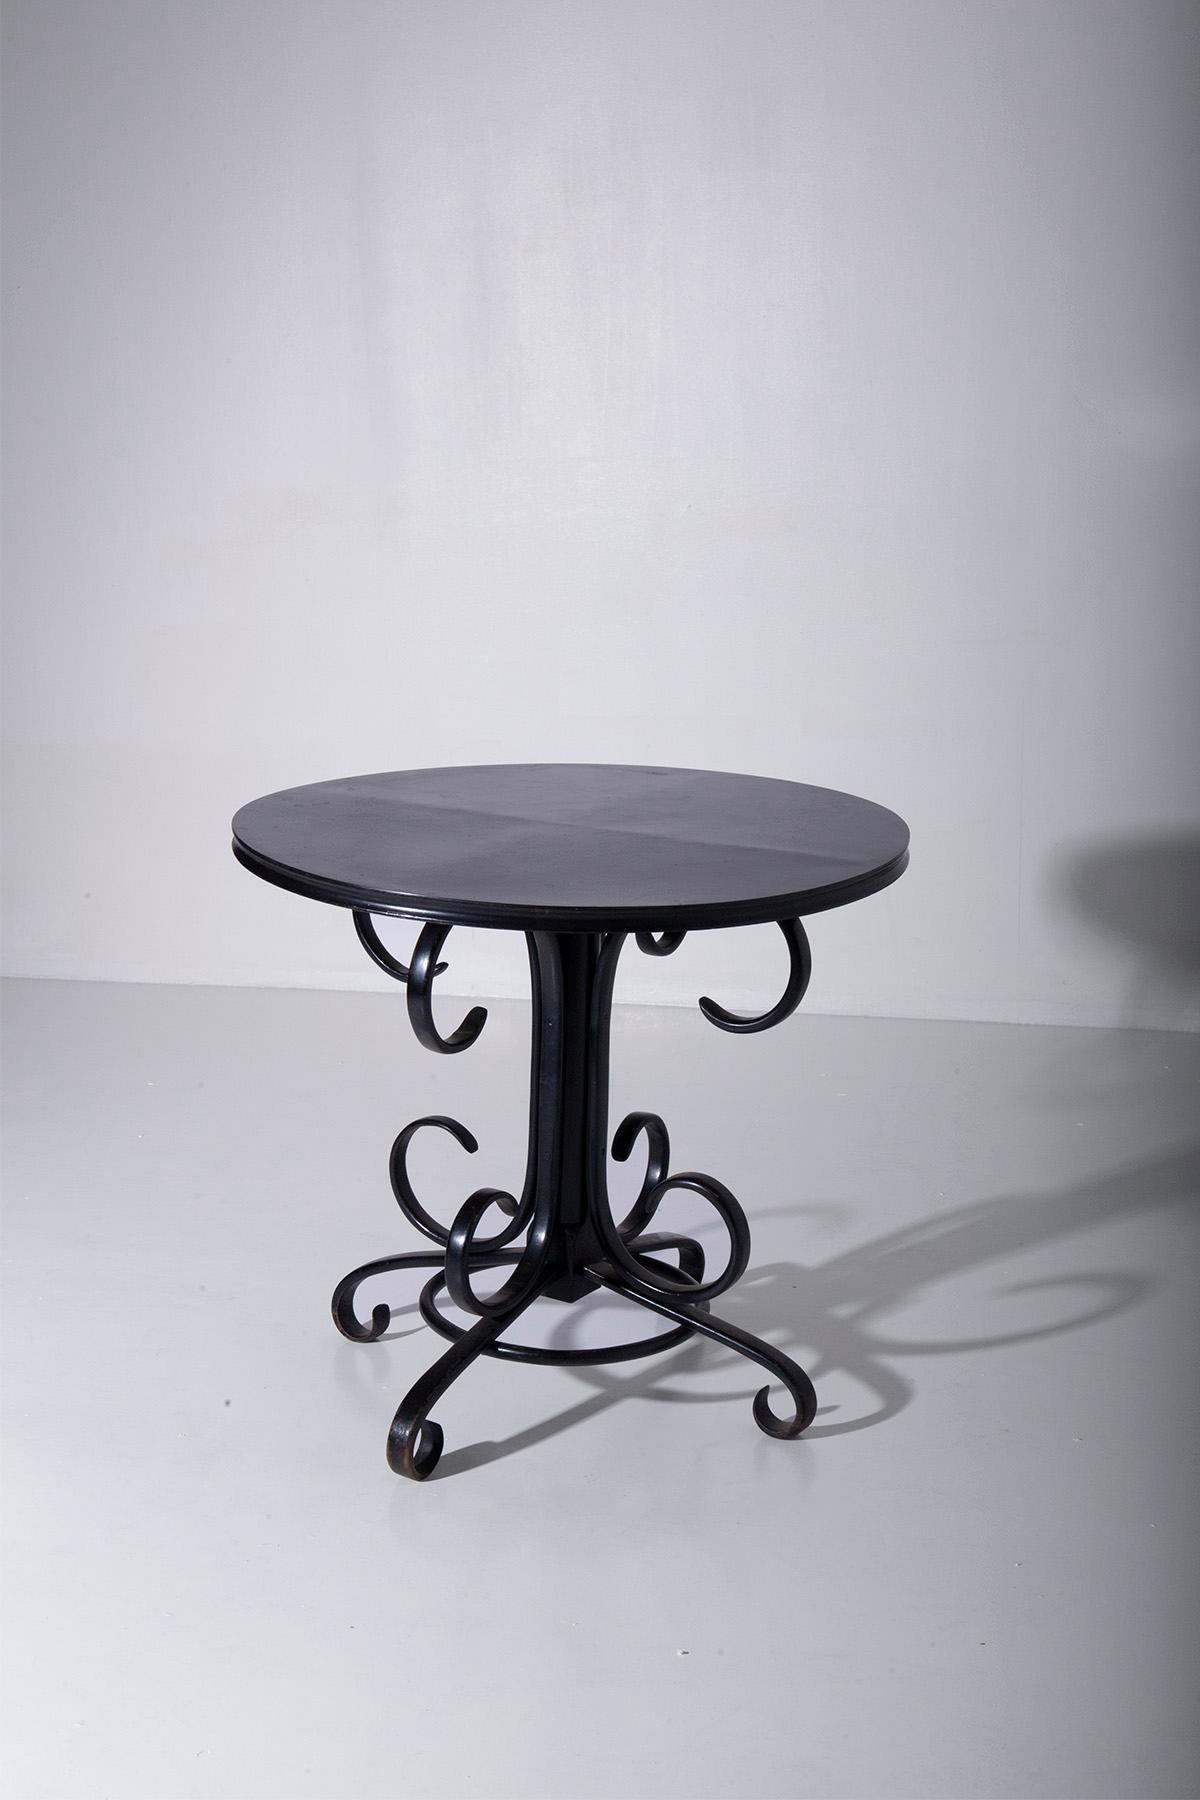 Stellen Sie sich einen hohen, eleganten Mitteltisch aus den frühen 1900er Jahren vor, ein wahres Zeugnis für die Opulenz und Raffinesse der Art-Déco-Ära. Dieses exquisite Stück ist ein glamouröses Kunstwerk, das aus schwarz lackiertem Holz gefertigt